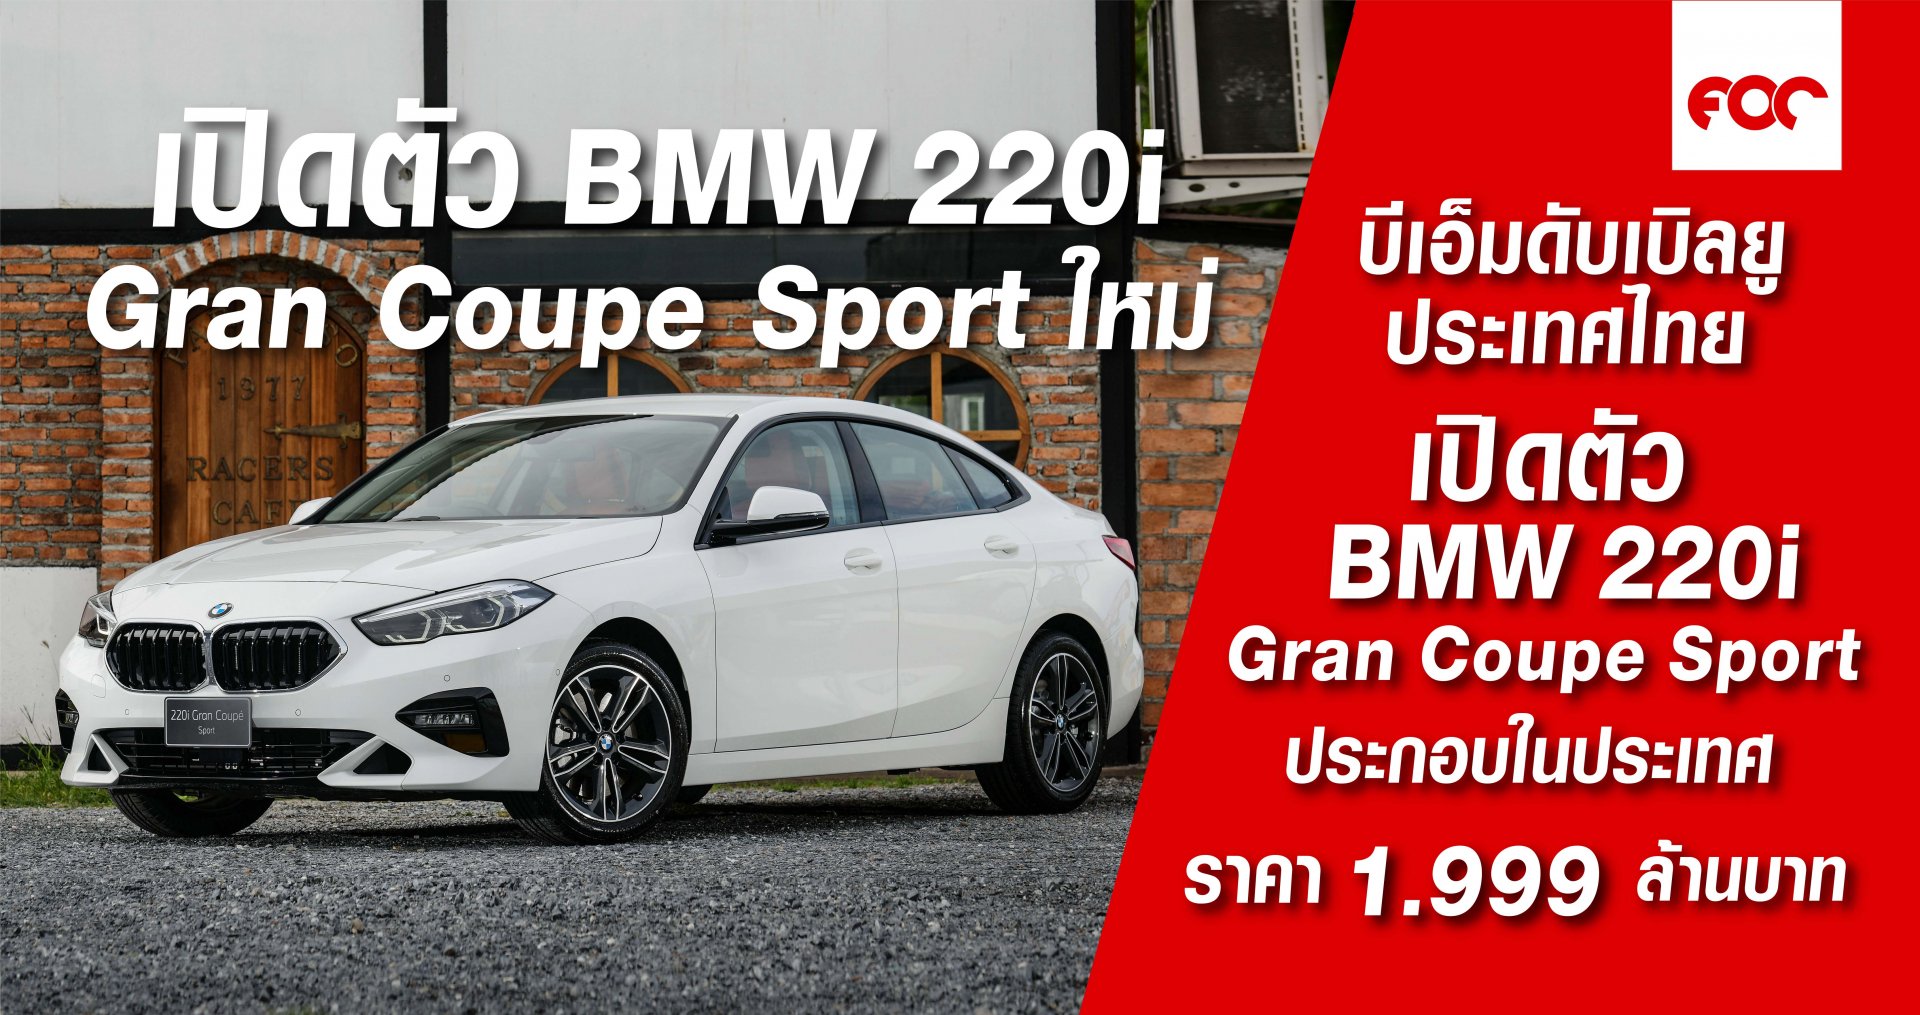 บีเอ็มดับเบิลยู ประเทศไทย เปิดตัวบีเอ็มดับเบิลยู 220i Gran Coupe Sport (CKD) ใหม่ ราคาจำหน่าย 1,999,000 บาท (รวมภาษีมูลค่าเพิ่ม และ BSI Standard)